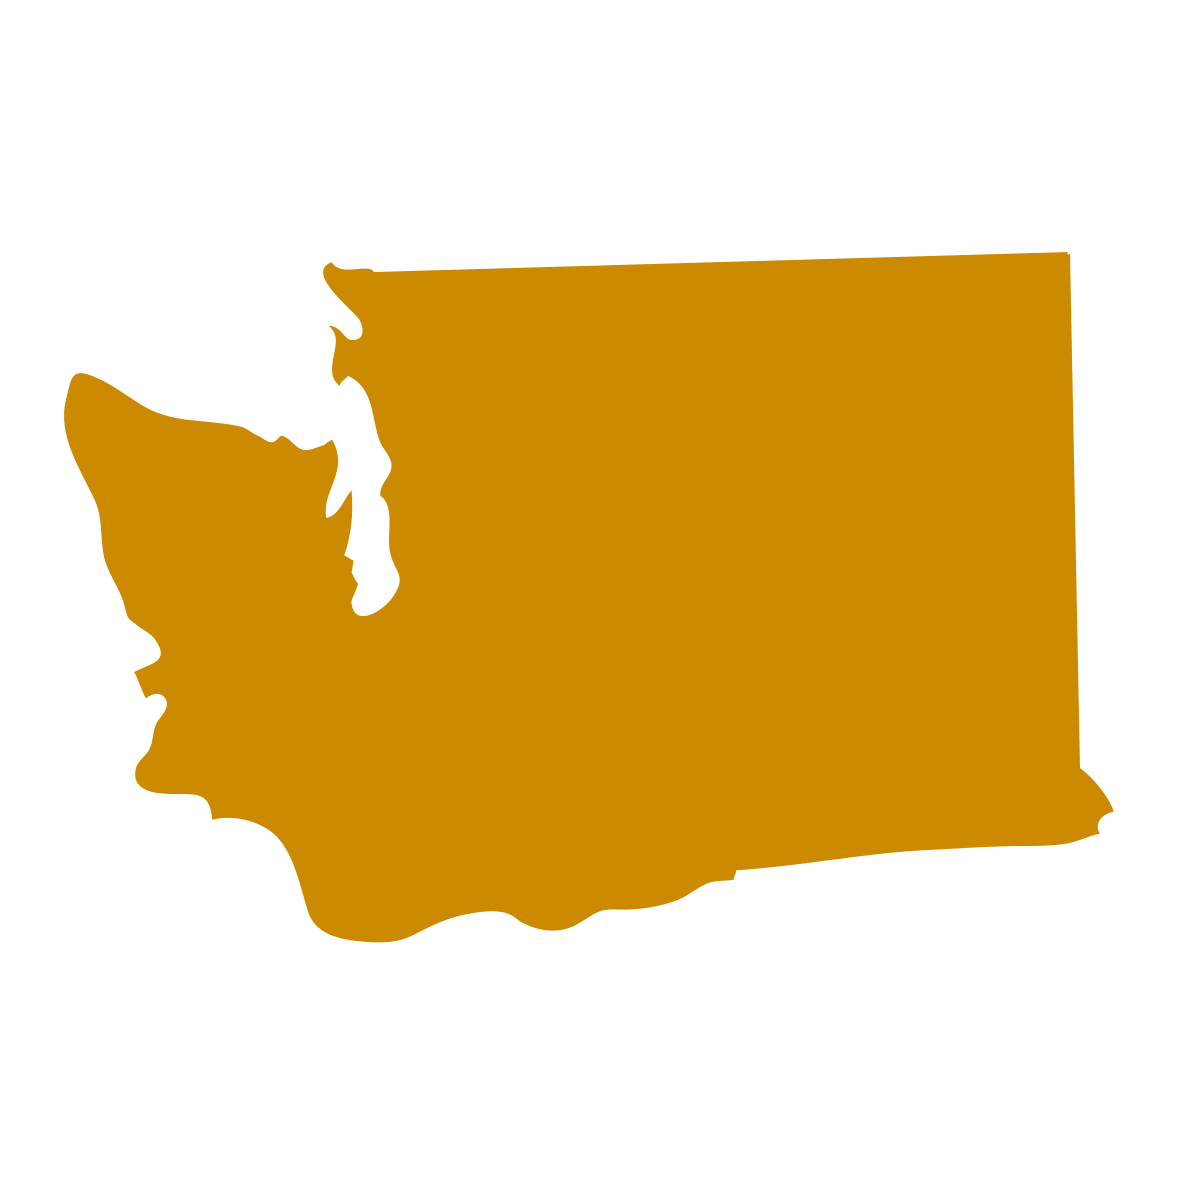 Washington State icon in turmeric